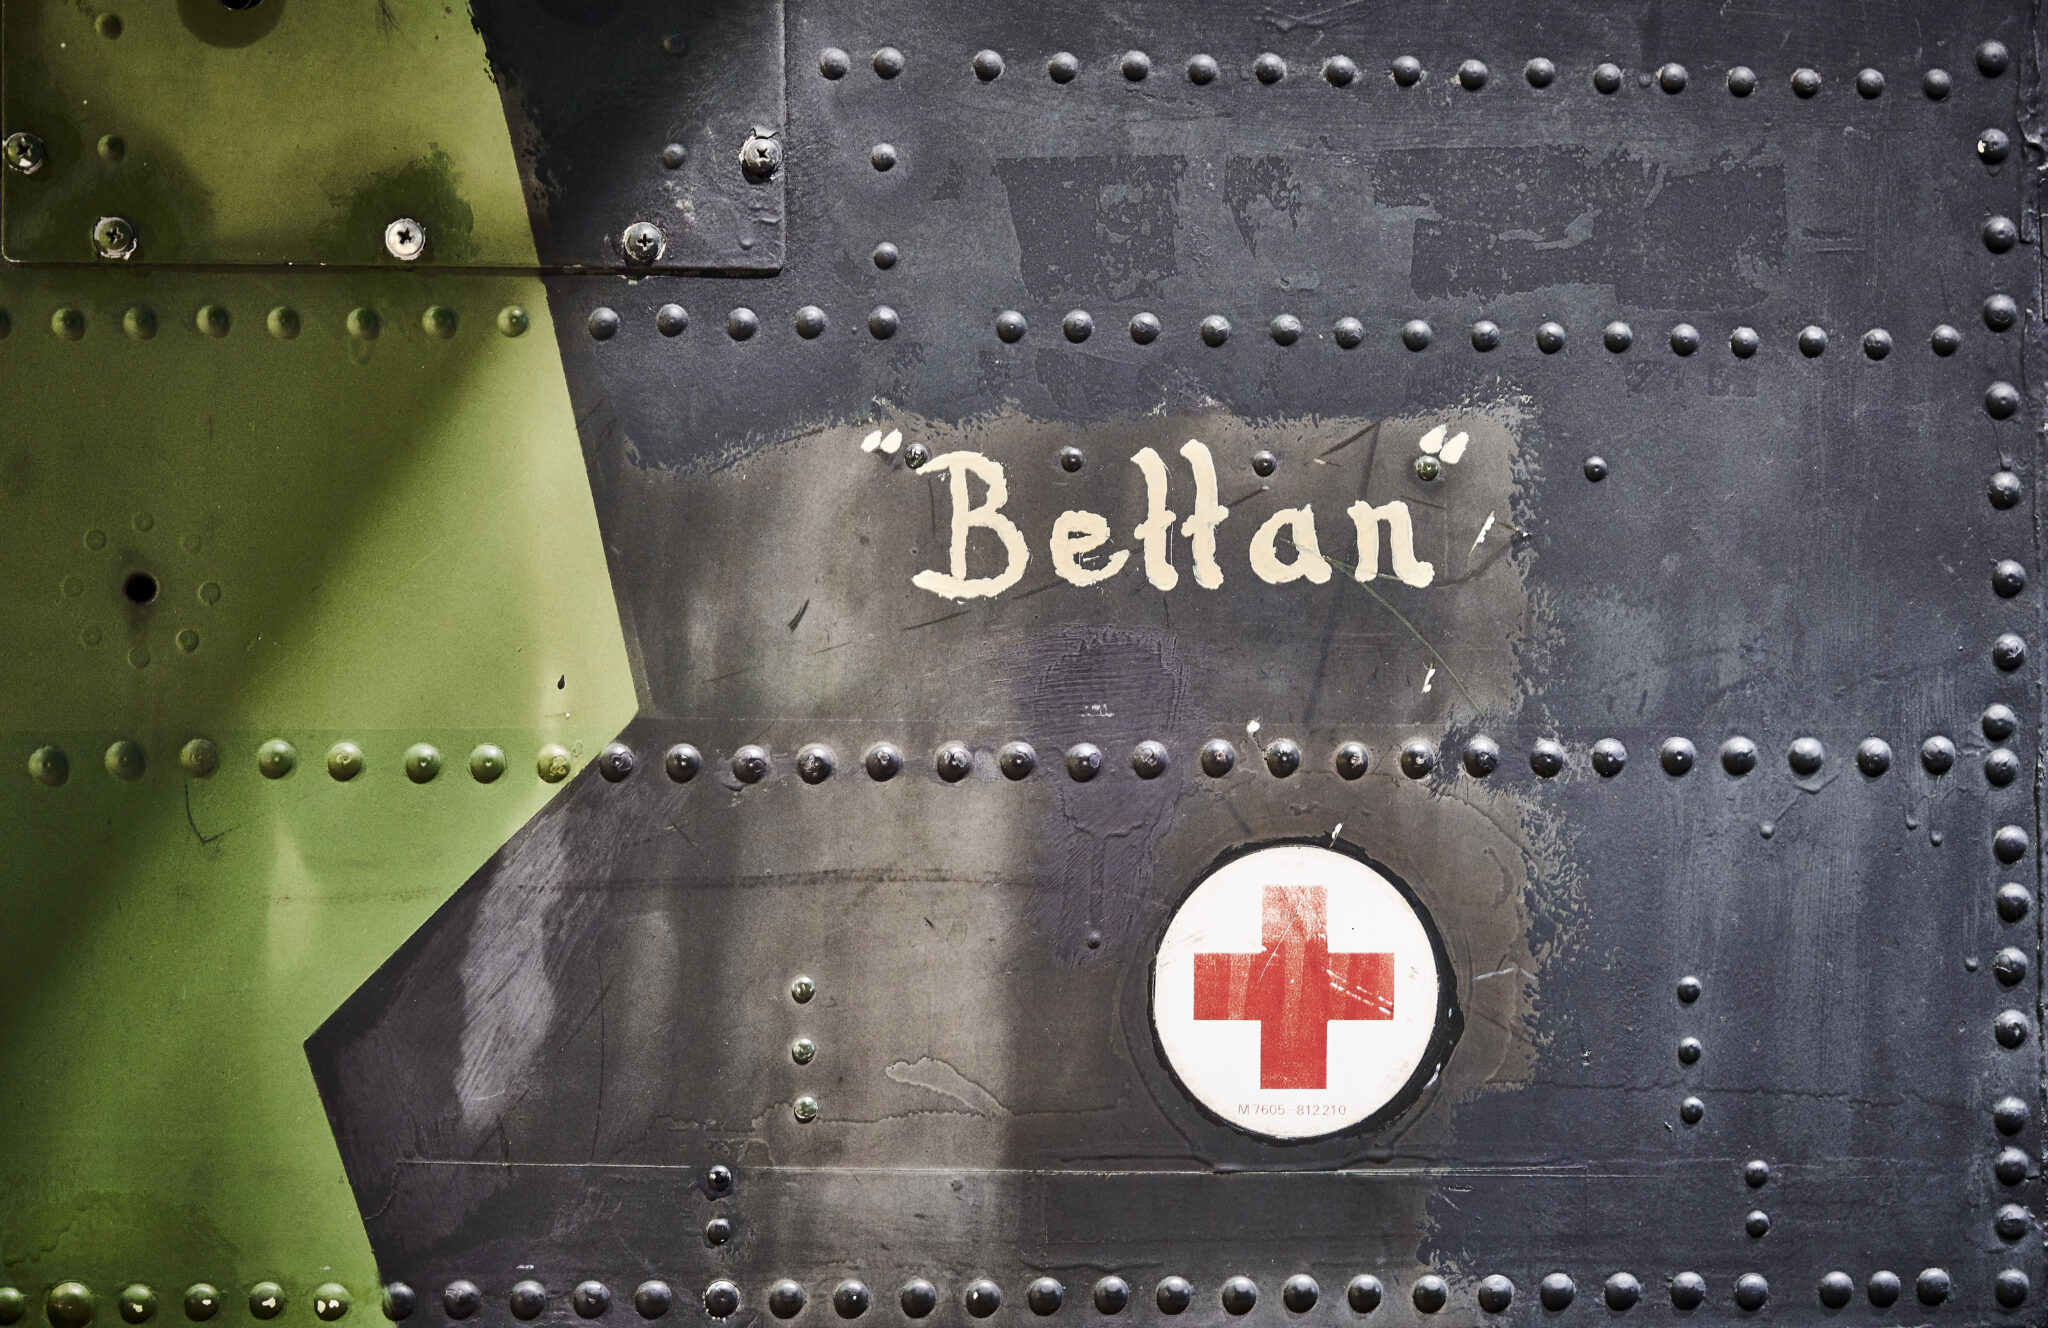 Märkningen "Bettan" på helikopter HKP4